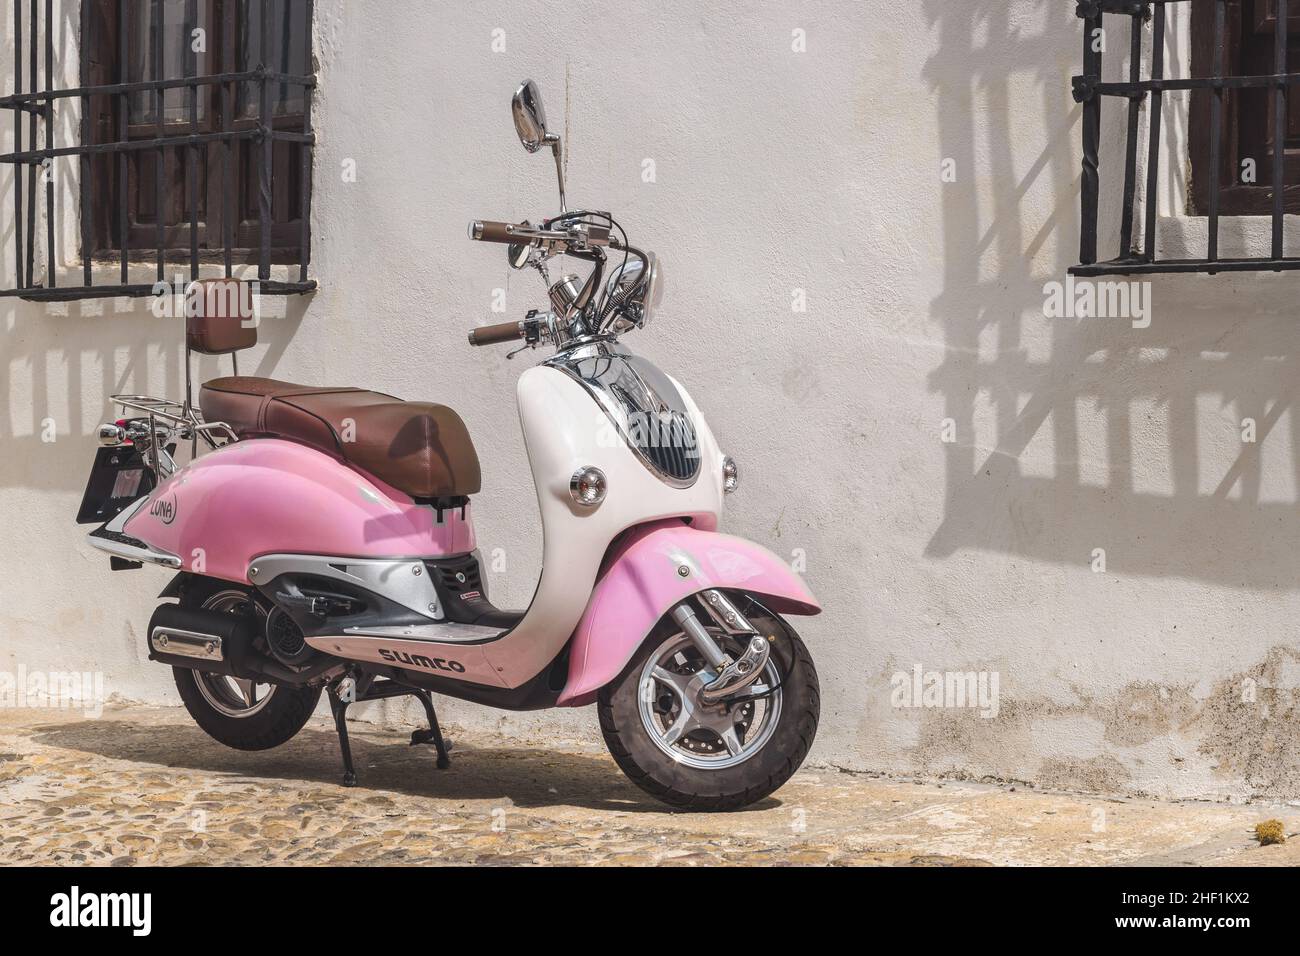 Moto Vespa aparcada en una calle una calle de Córdoba, España Stock Photo